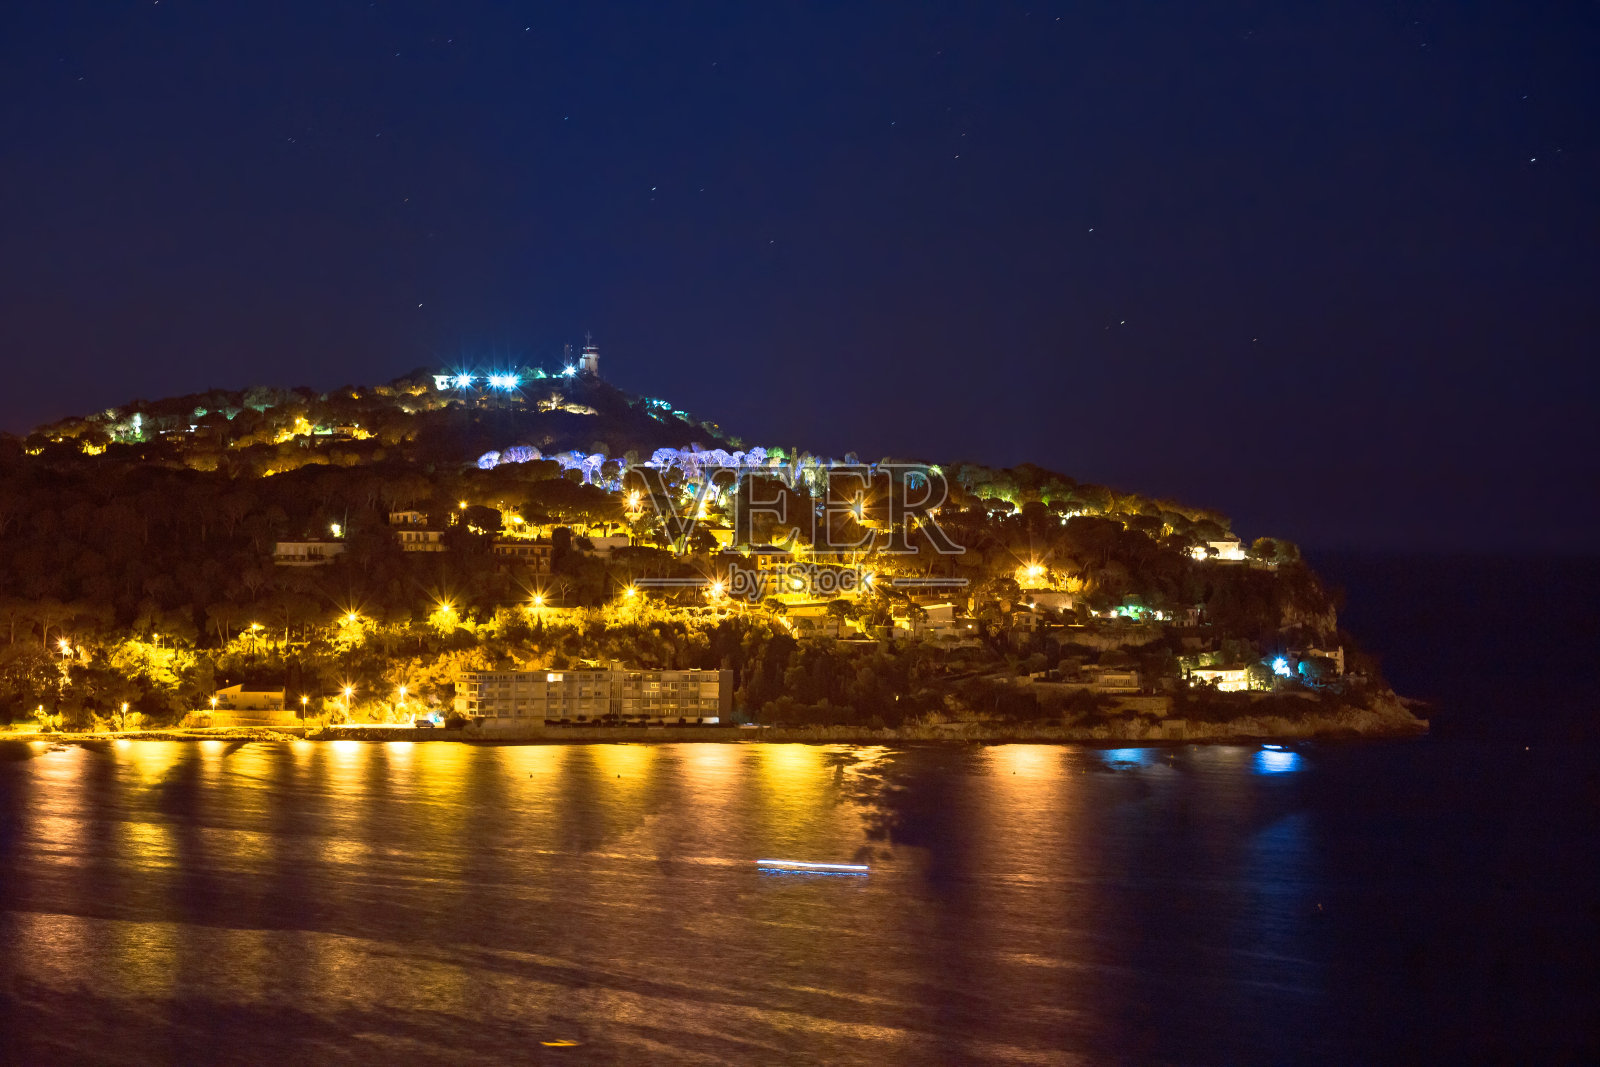 从 Villefranche sur Mer 欣赏 Cap Ferrat 半岛夜景照片摄影图片